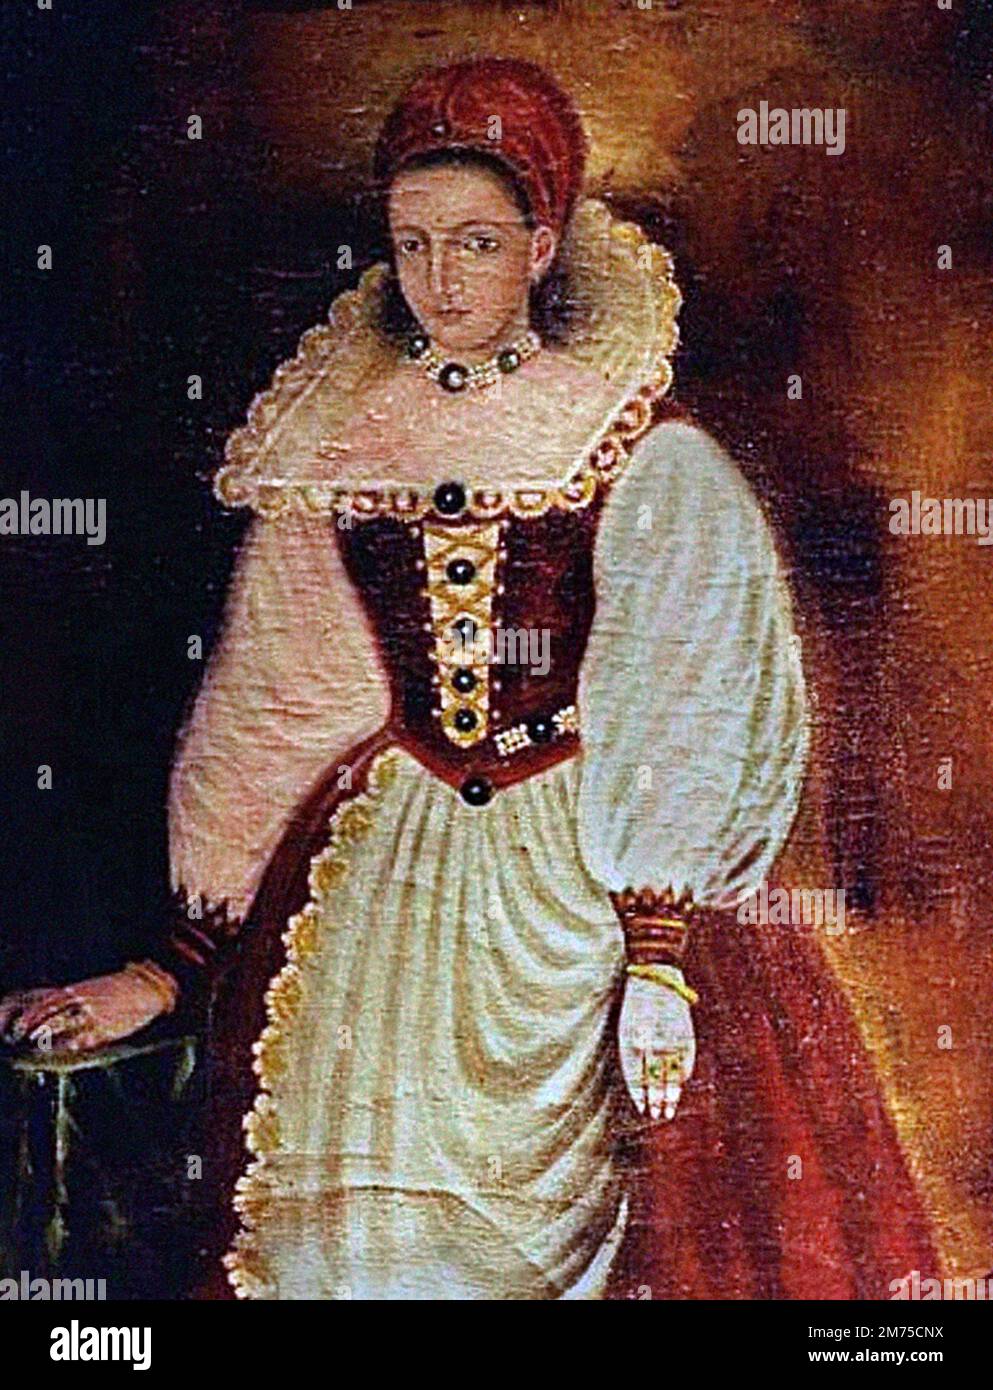 Elizabeth Báthory. Ritratto della contessa Elizabeth Báthory de Ecsed (1560-1614), copia di un originale perduto dipinto nel 1585. Bathory era una nobildonna ungherese e presunto serial killer della famiglia di Báthory, che possedeva terreni nel Regno di Ungheria (ora Slovacchia). Lei e quattro dei suoi servitori sono stati accusati di torturare e uccidere centinaia di ragazze e donne tra il 1590 e il 1610. I suoi servi furono processati e condannati, mentre Báthory fu confinato fino alla sua morte. Foto Stock